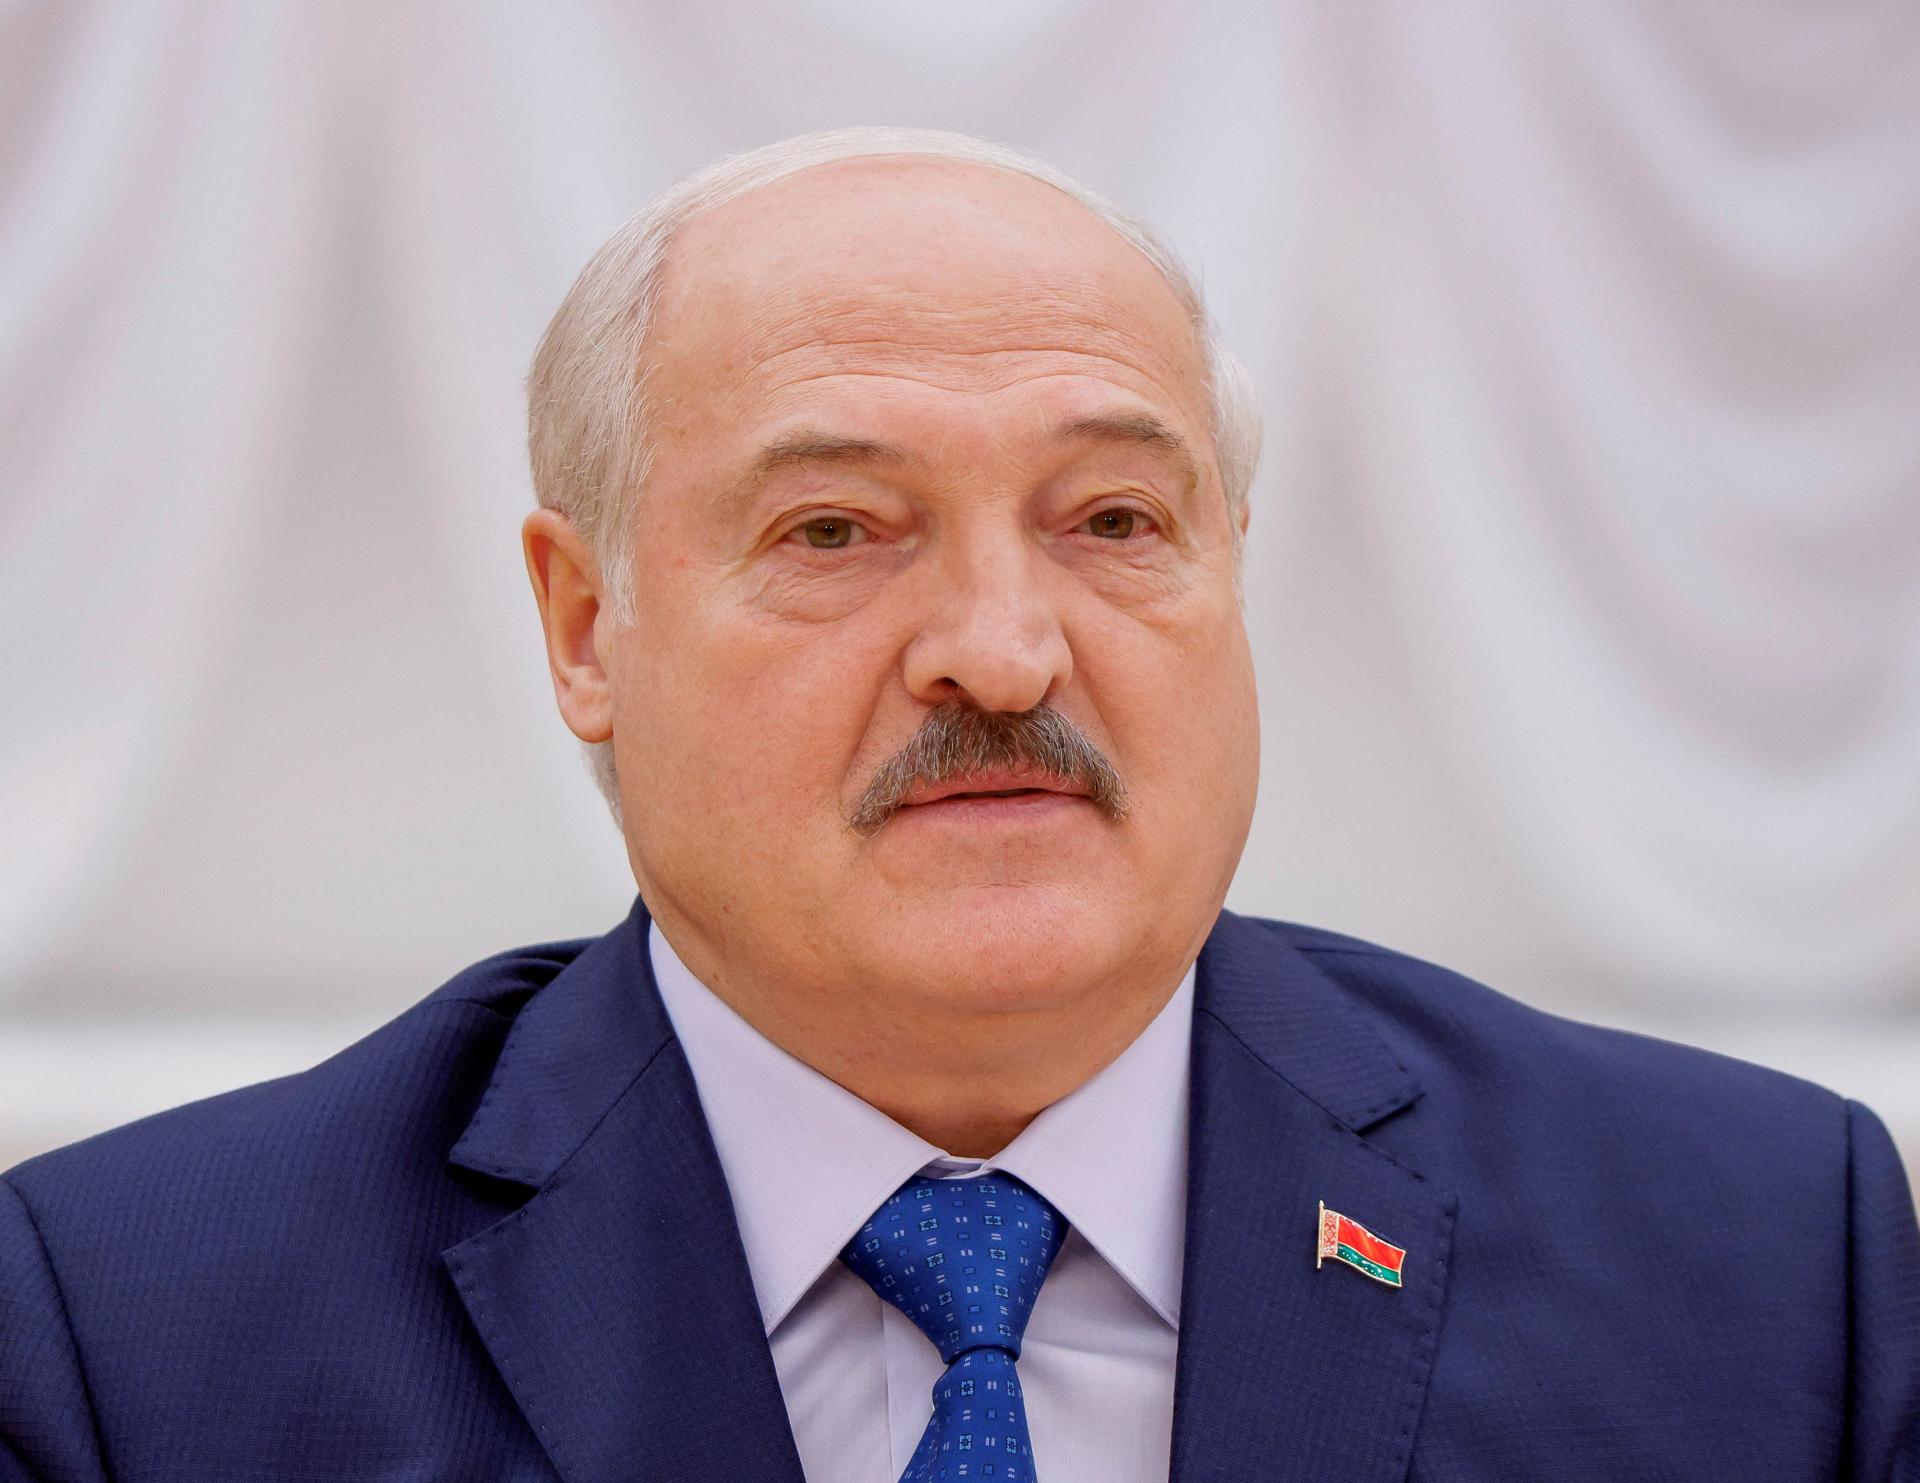 Nie som diktátor a ak áno, určite nie posledný v Európe, vyhlásil Lukašenko